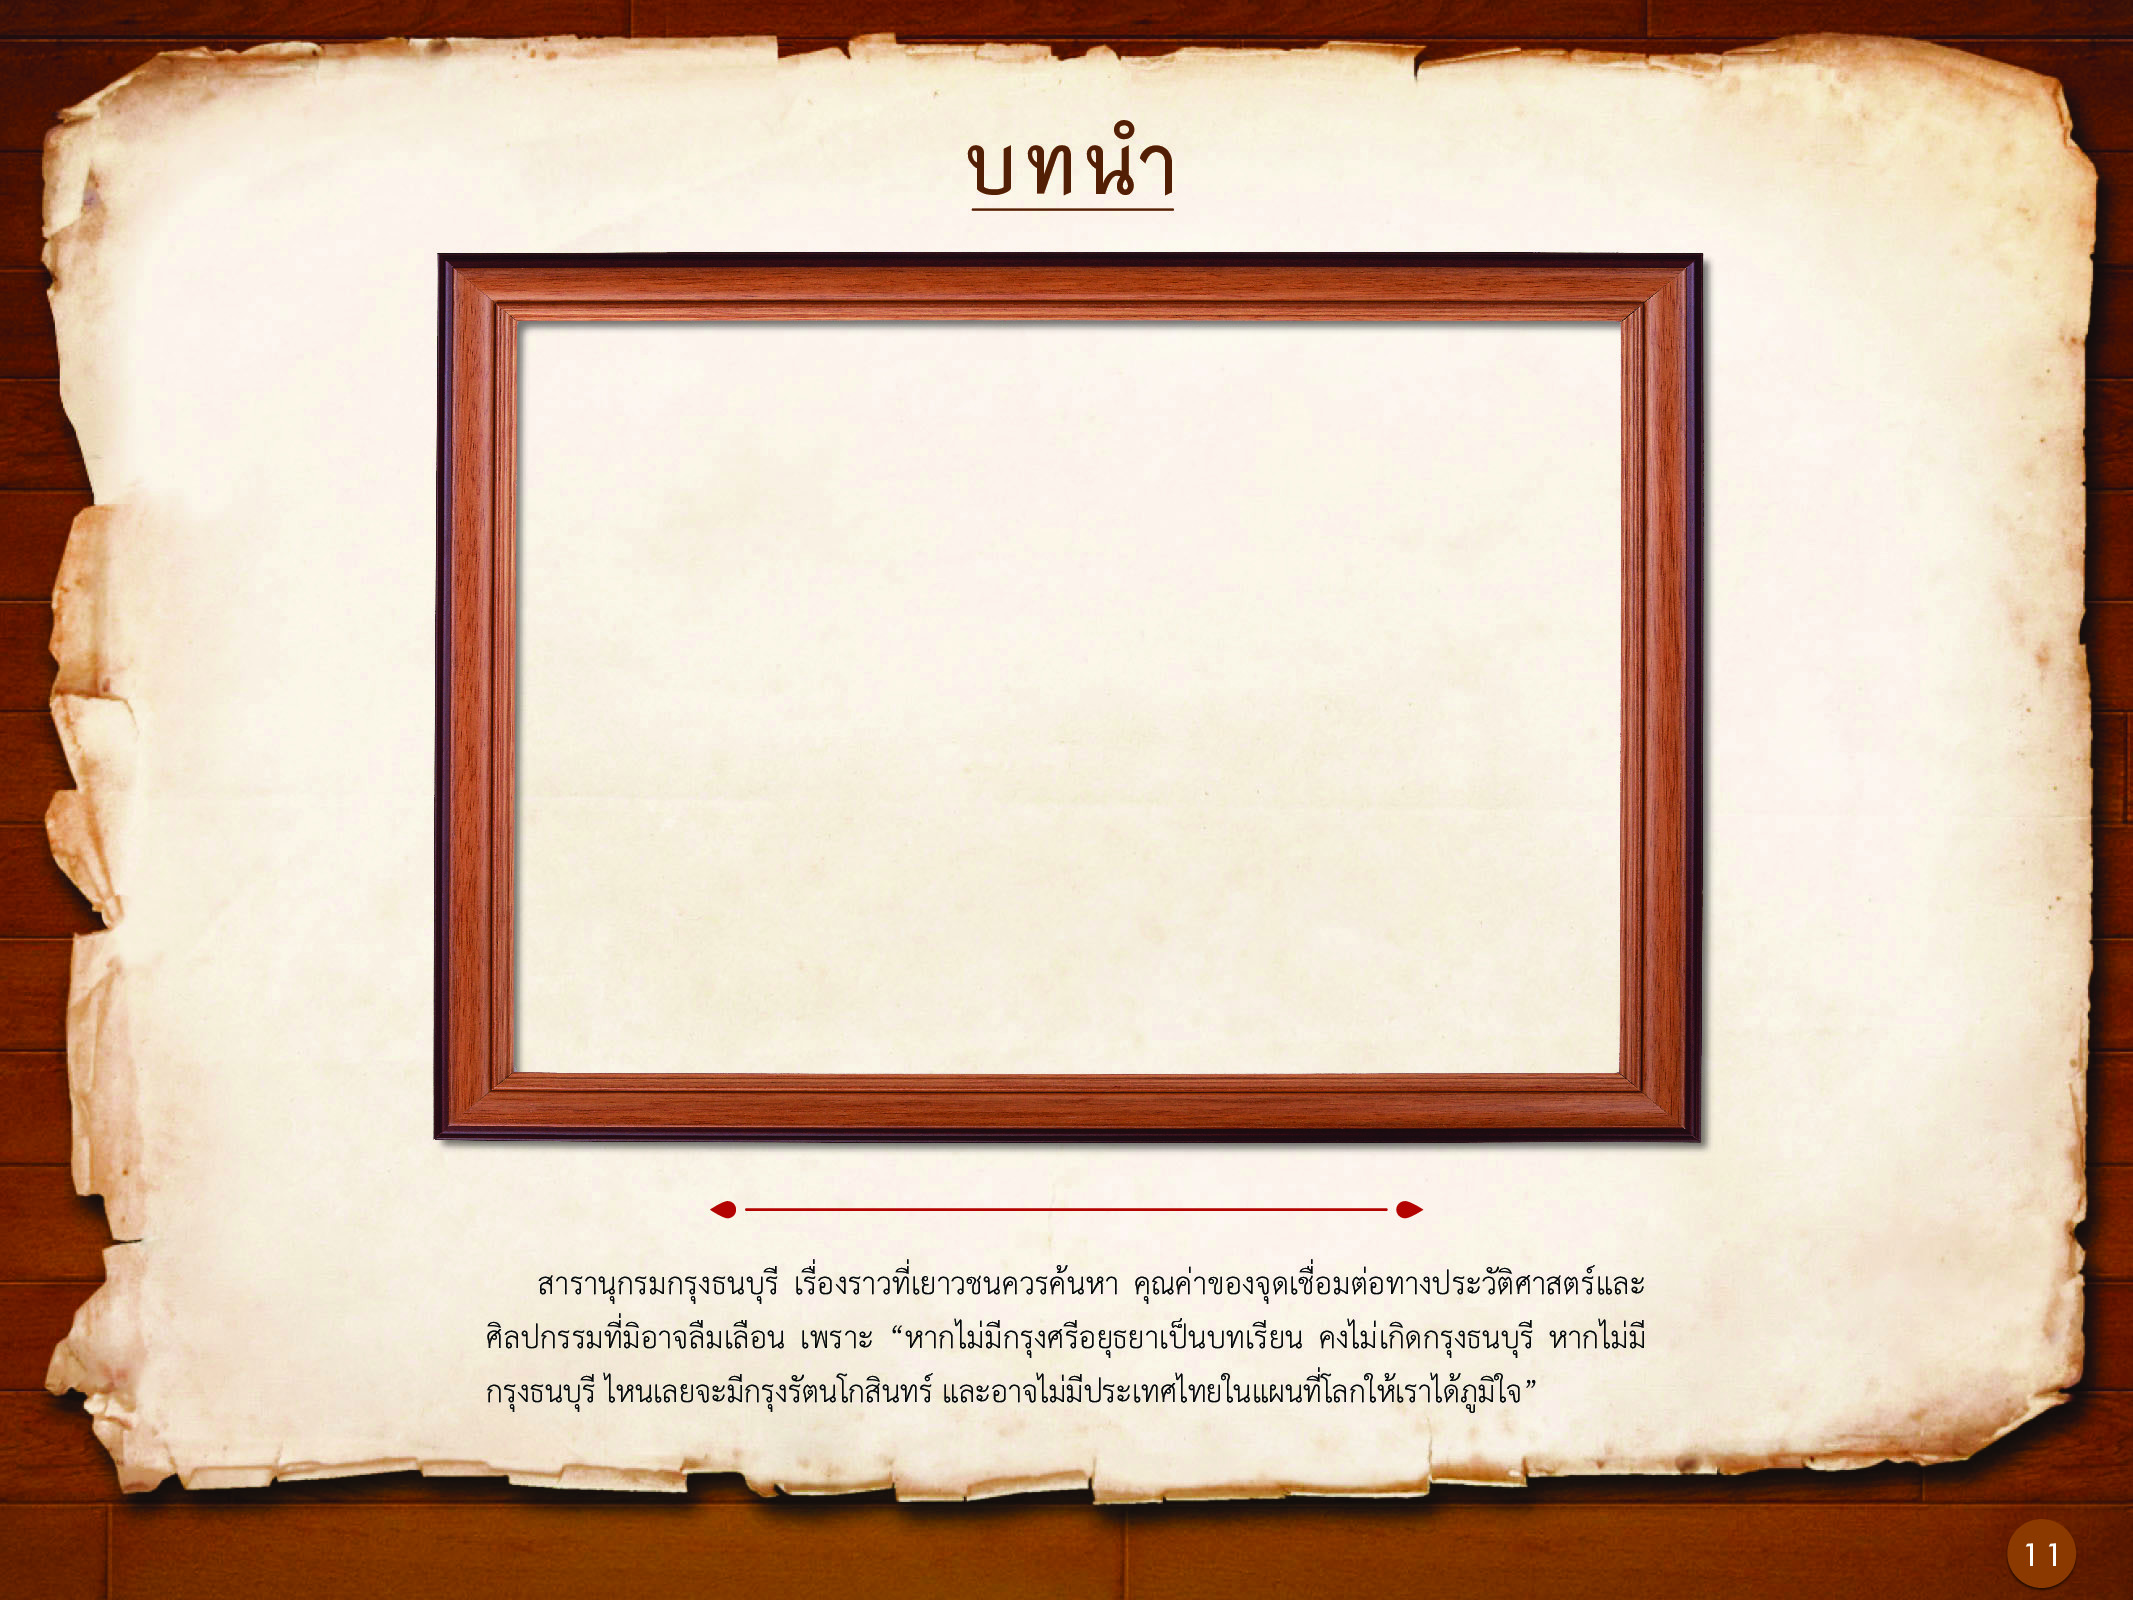 ประวัติศาสตร์กรุงธนบุรี ./images/history_dhonburi/11.jpg